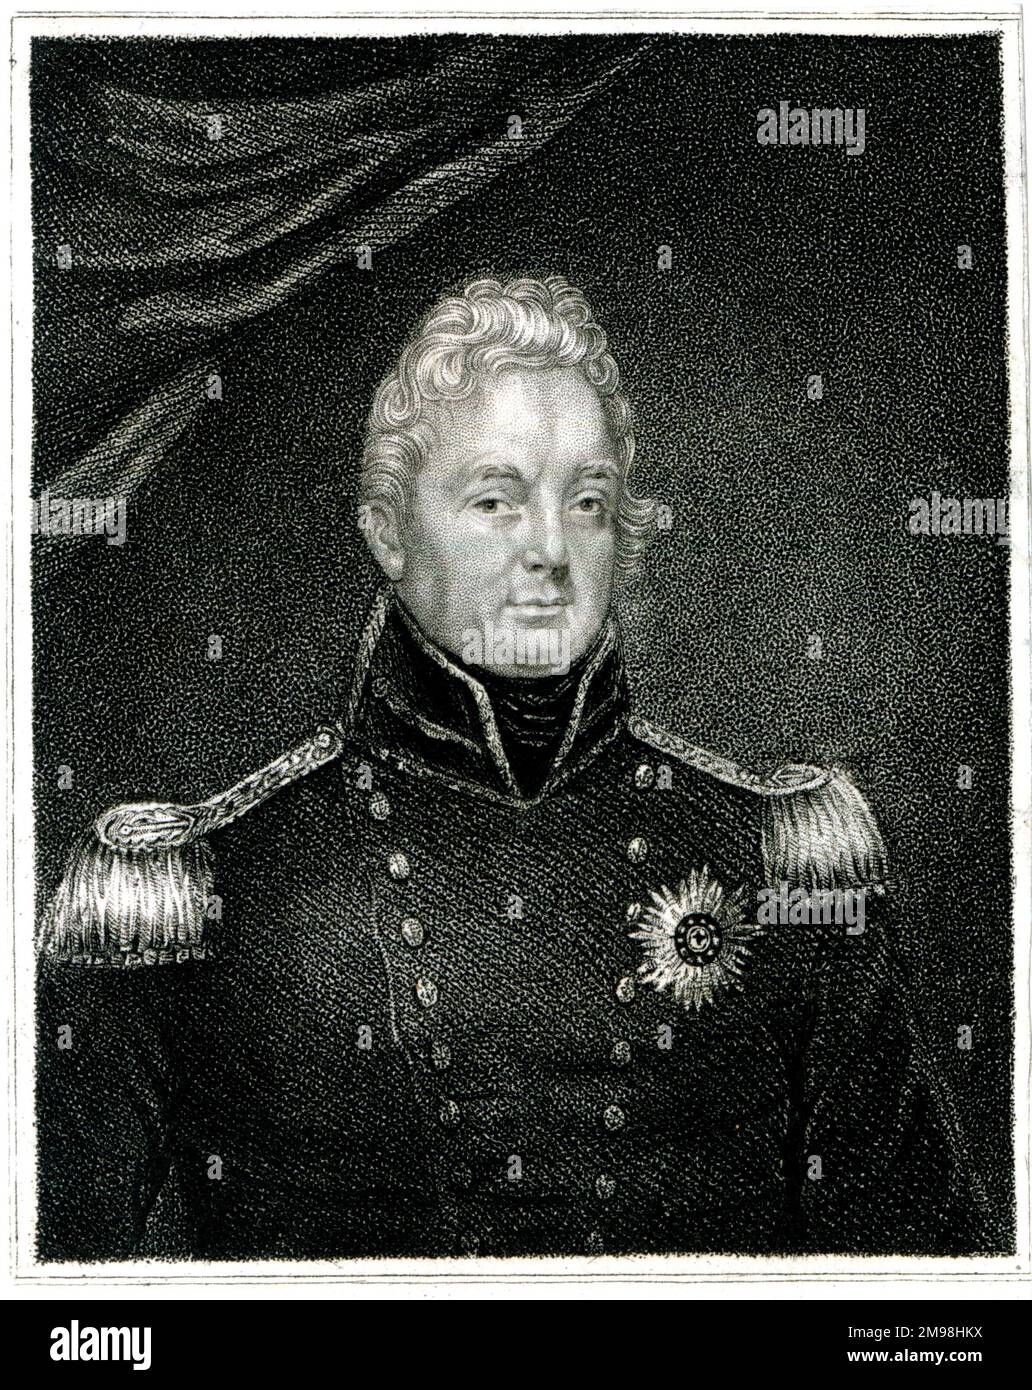 Wilhelm IV. (1765-1837), König des Vereinigten Königreichs Großbritannien und Irland und König von Hannover vom 26. Juni 1830 bis zu seinem Tod, hier in Marineuniform als Lord High Admiral gesehen. Stockfoto